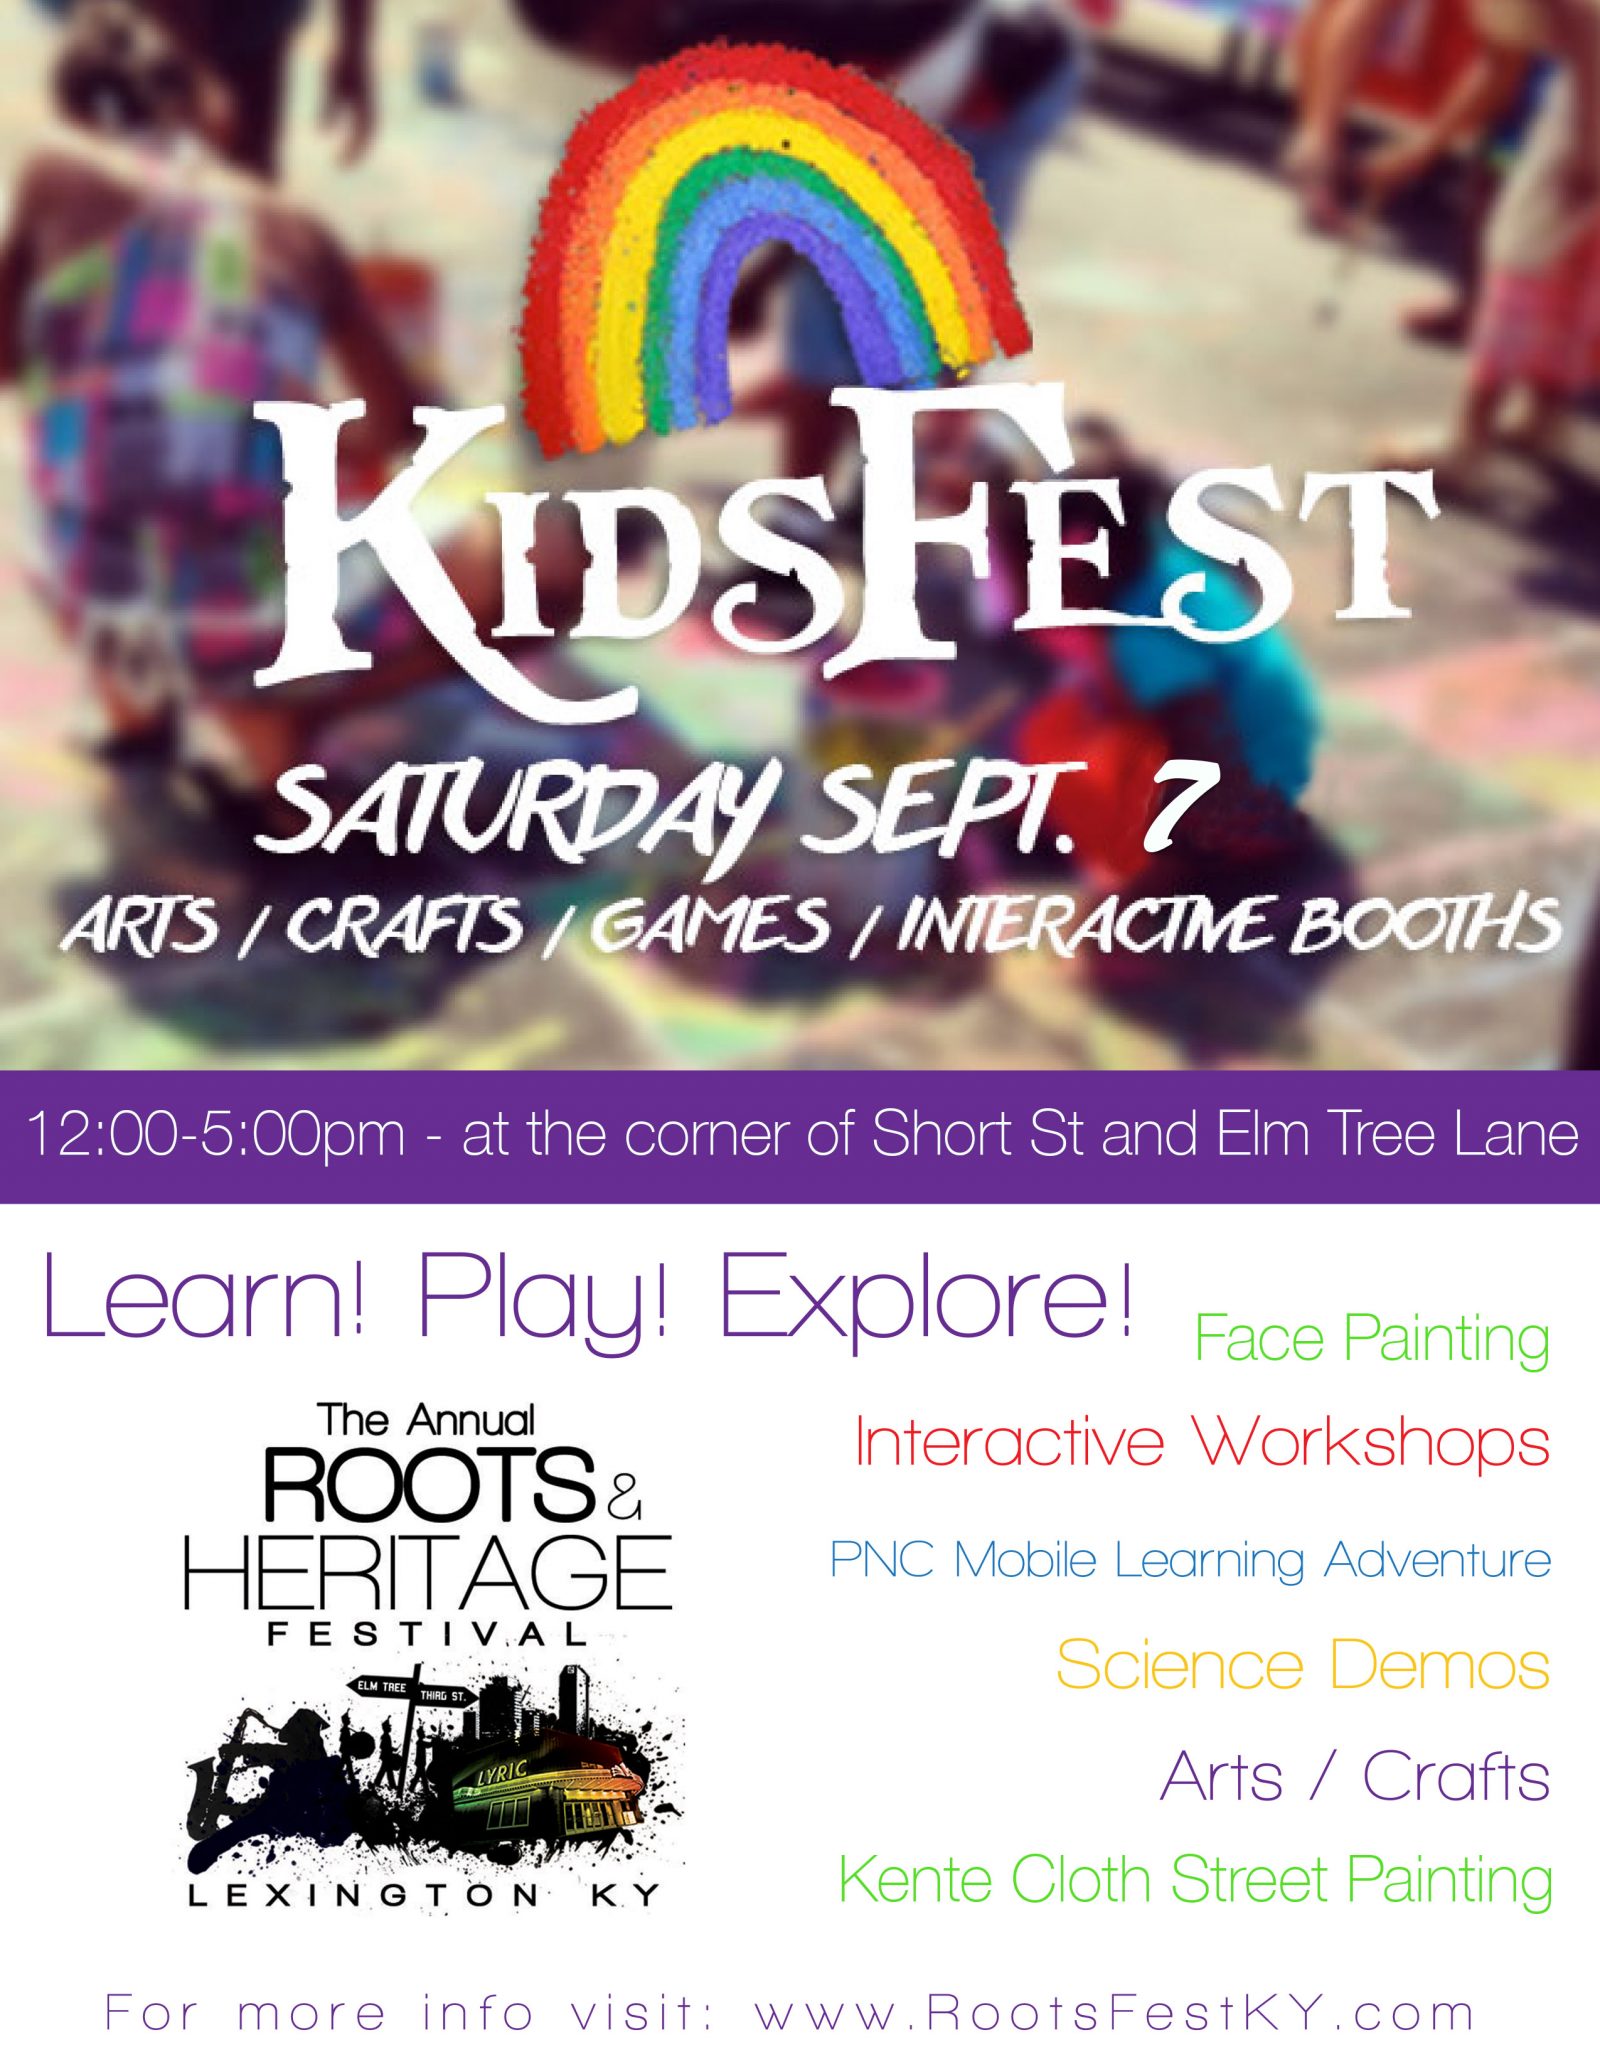 KIDS FEST! Lexington Roots & Heritage Festival